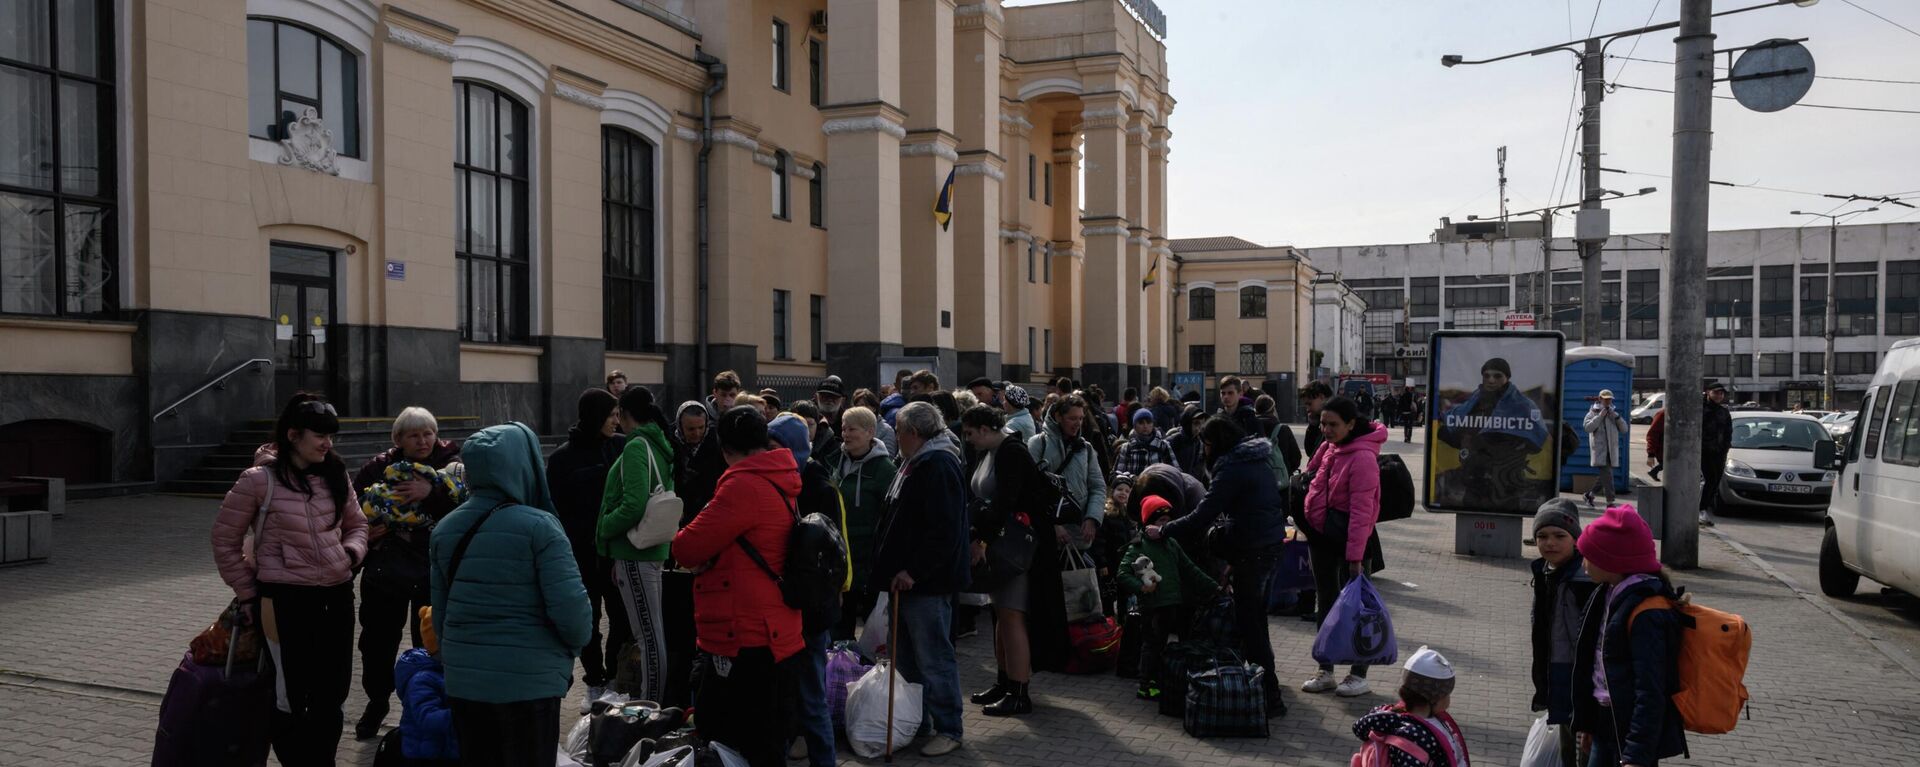 Deslocados internos se preparam para embarcar em um trem de evacuação que parte para Lvov, um dia depois de chegar como parte de um comboio humanitário da cidade sitiada de Mariupol, em uma estação ferroviária na cidade de Zaporozhie, em 22 de abril - Sputnik Brasil, 1920, 22.04.2022